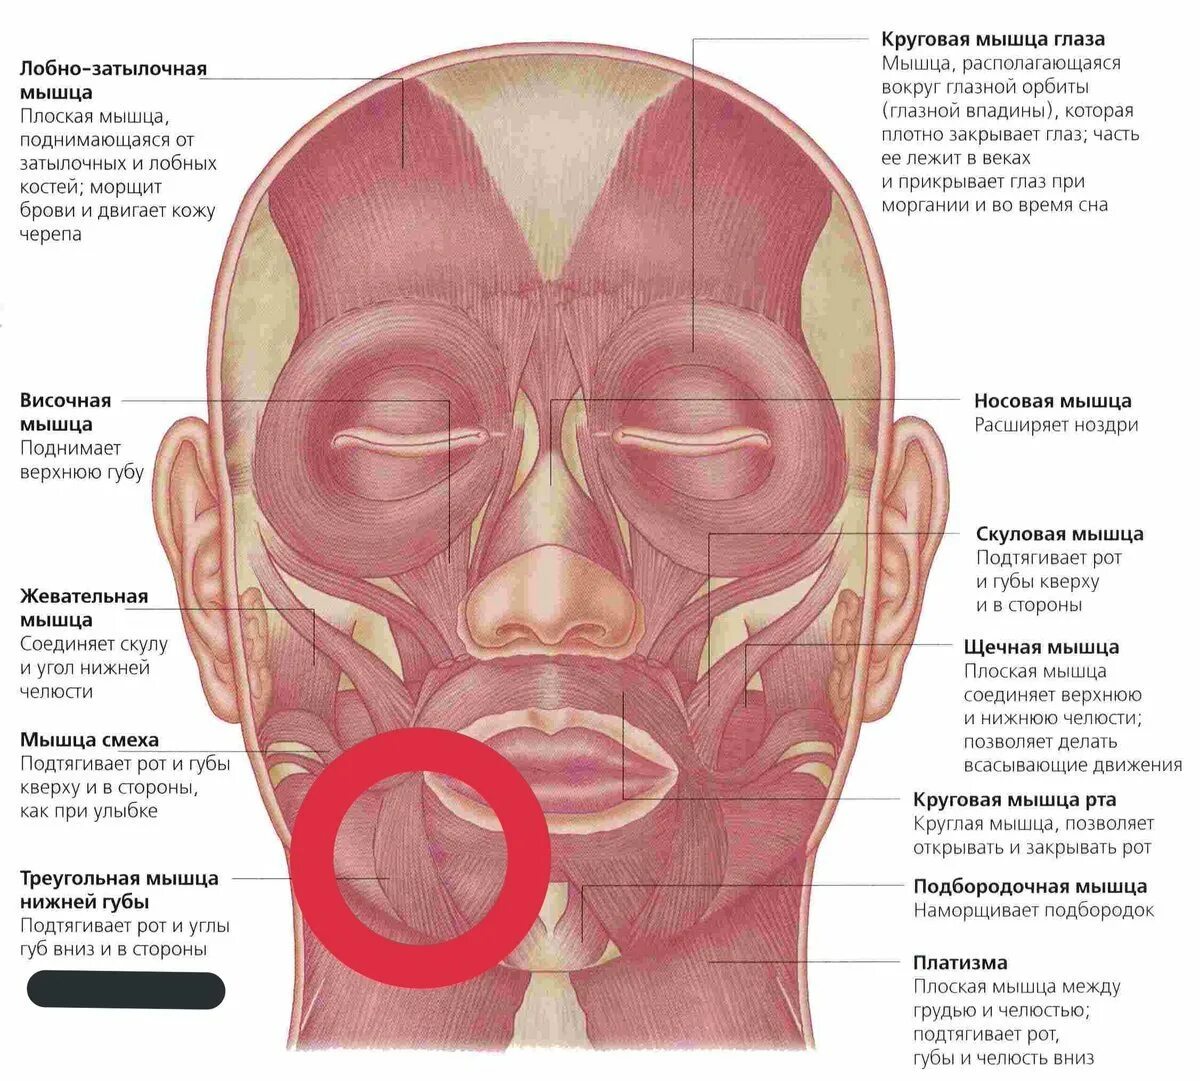 Косметология мышцы. Лицевые мышцы лица анатомия. Мышцы лица анатомия атлас. Мышцы лица и шеи анатомия для косметологов. Анатомия атлас Синельникова лицо мышцы.